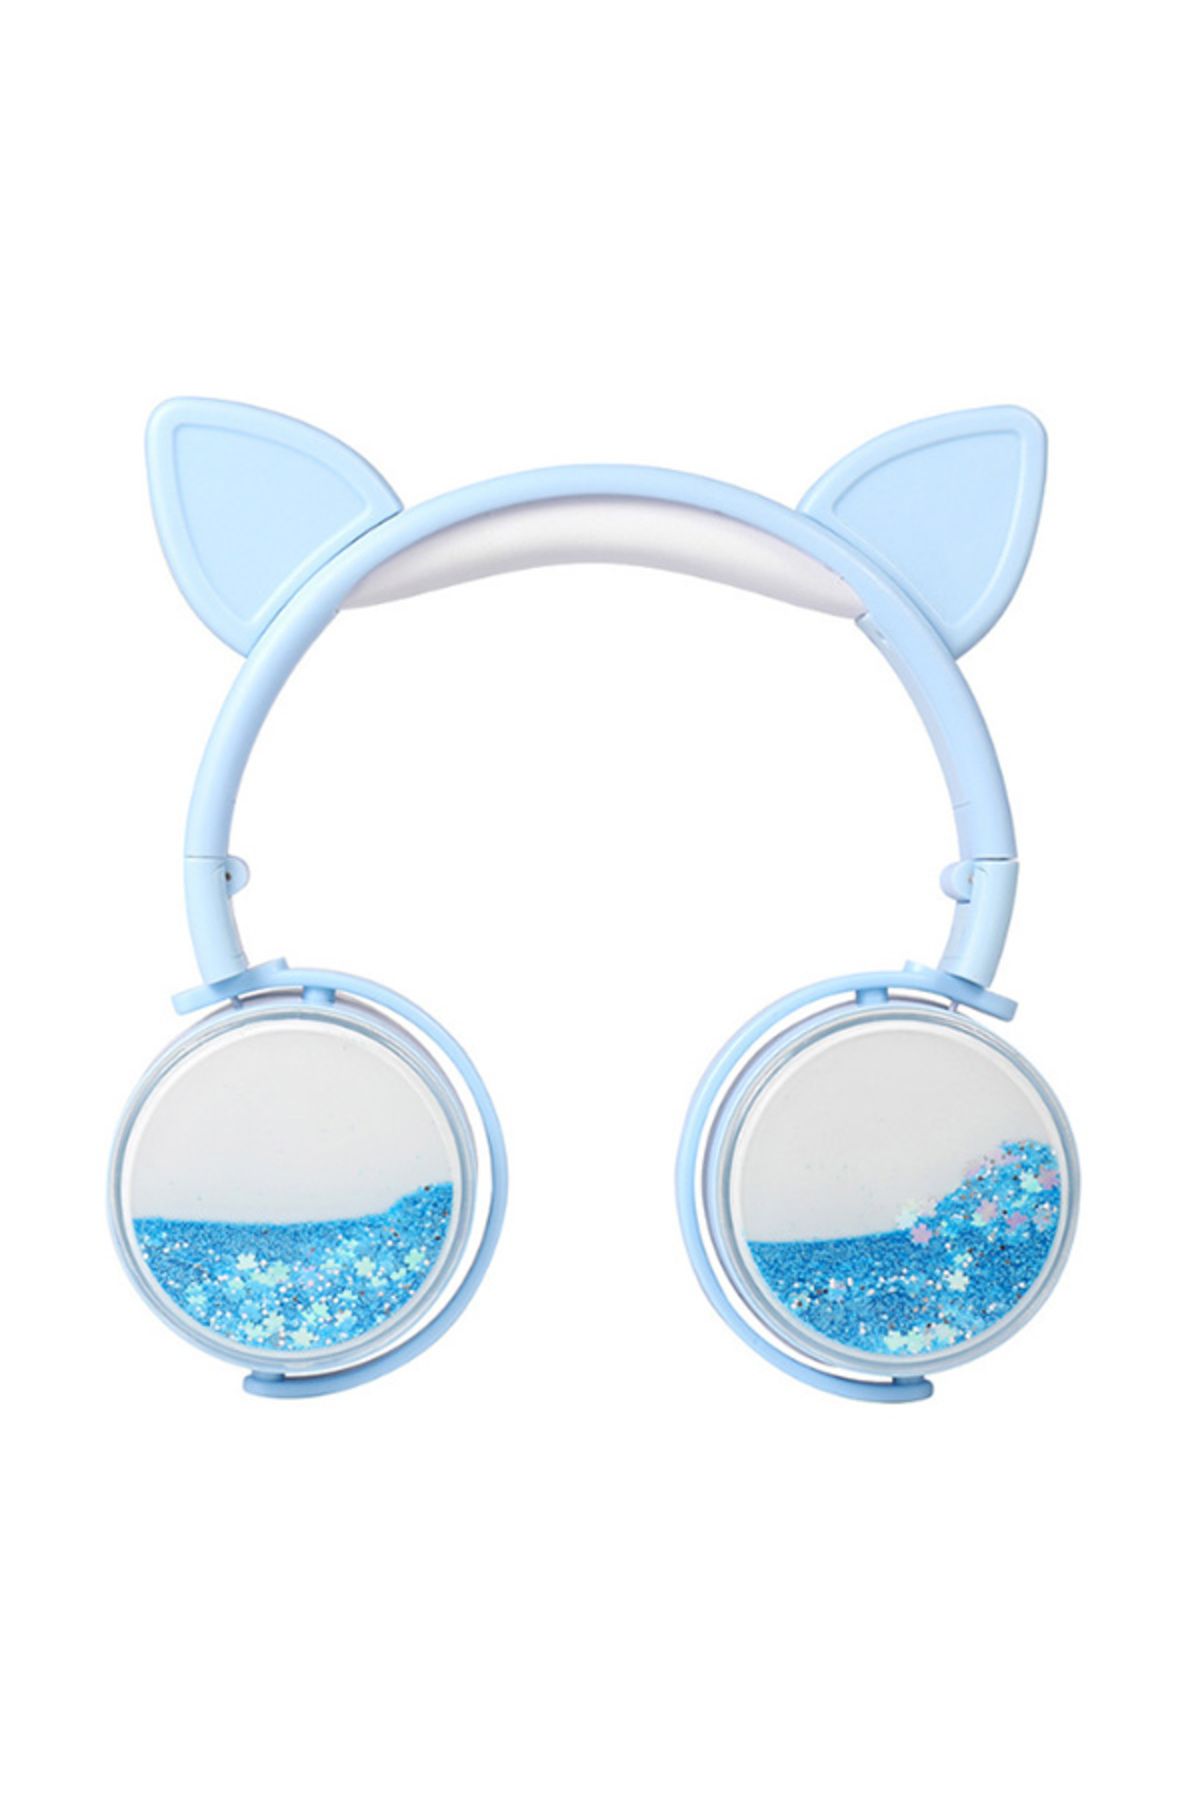 Ally Mobile ALLY Kedi Kulak Simli Kablolu Mikrofonlu Kulaküstü Kulaklık 3.5mm jack